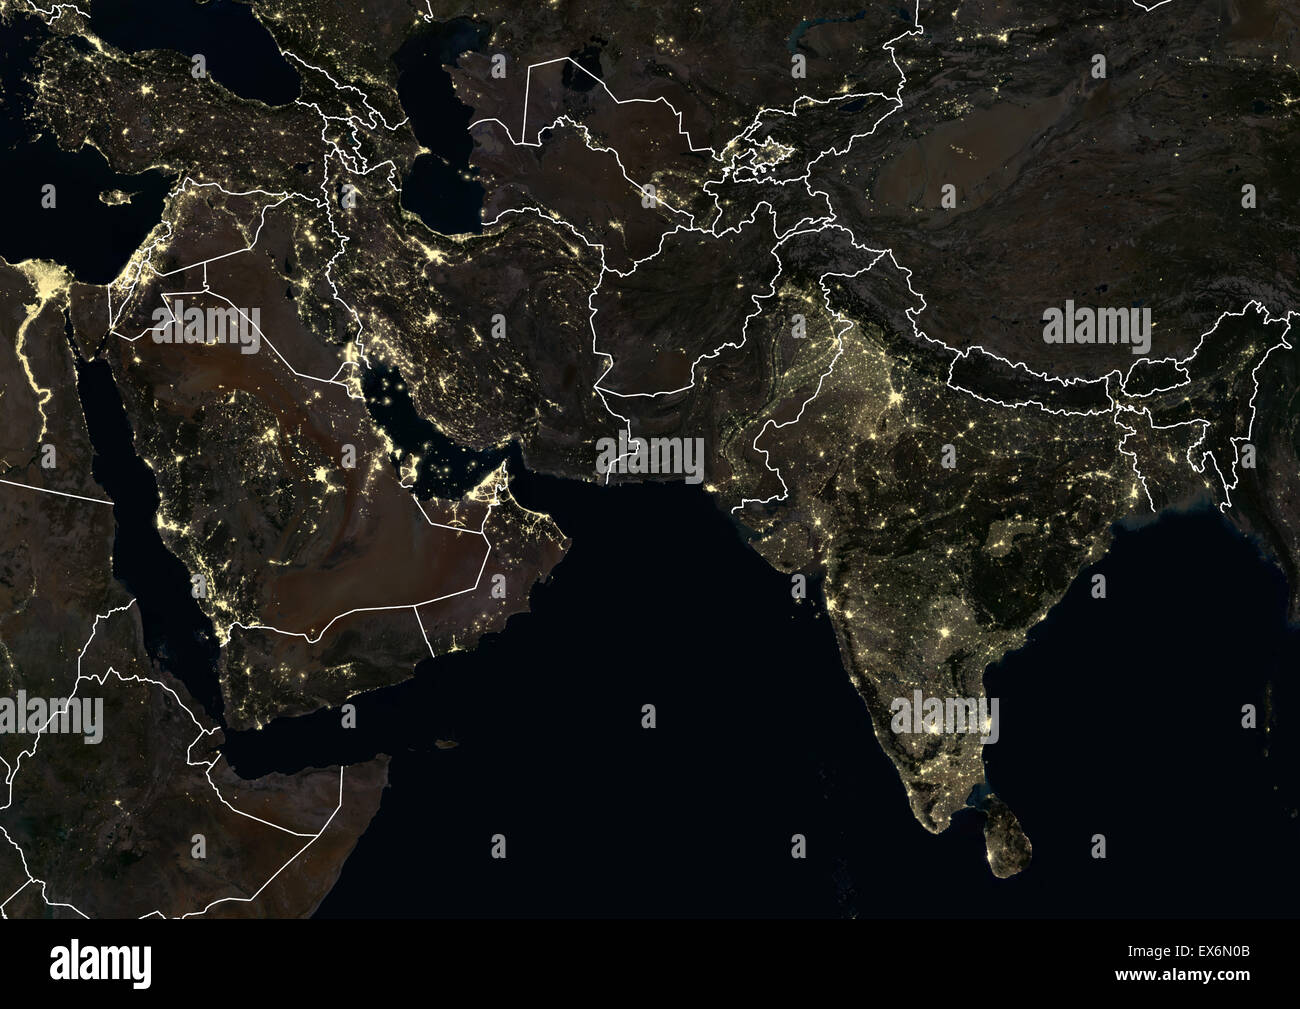 Mittleren Osten und Indien in der Nacht im Jahr 2012. Dieses Satellitenbild mit Landesgrenzen zeigt städtische und industrielle Beleuchtung. Stockfoto